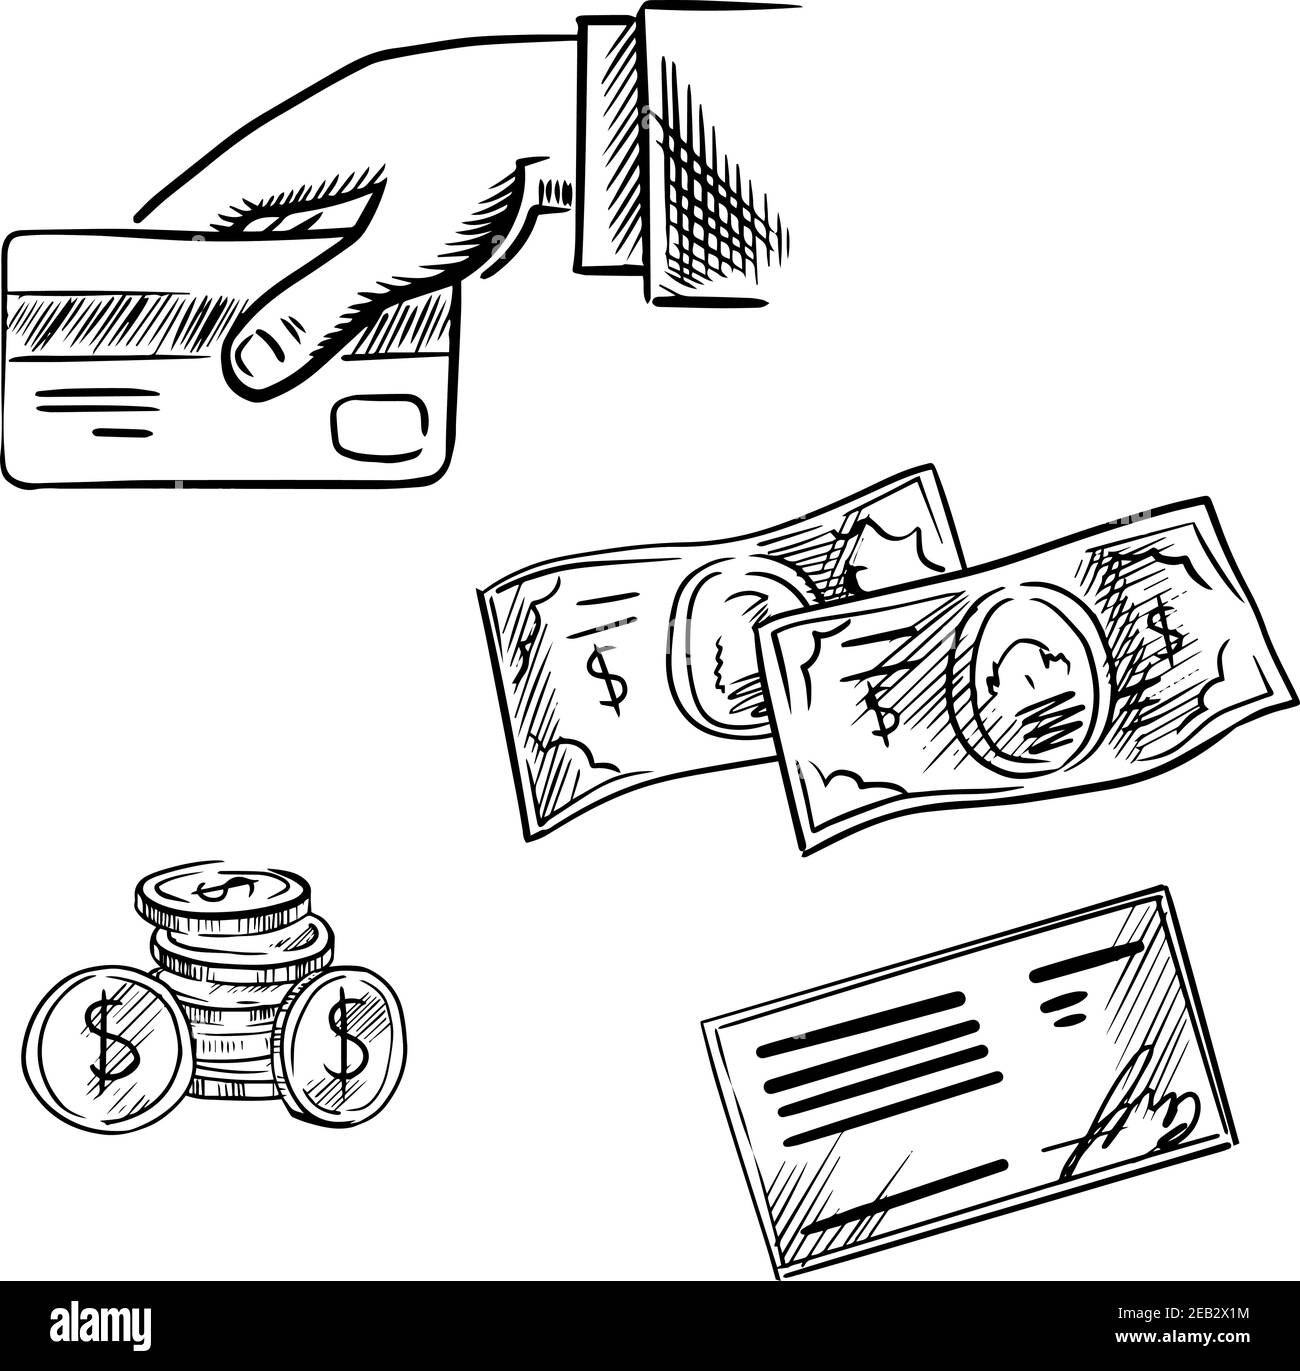 Рисунки на тему использование банковских карт